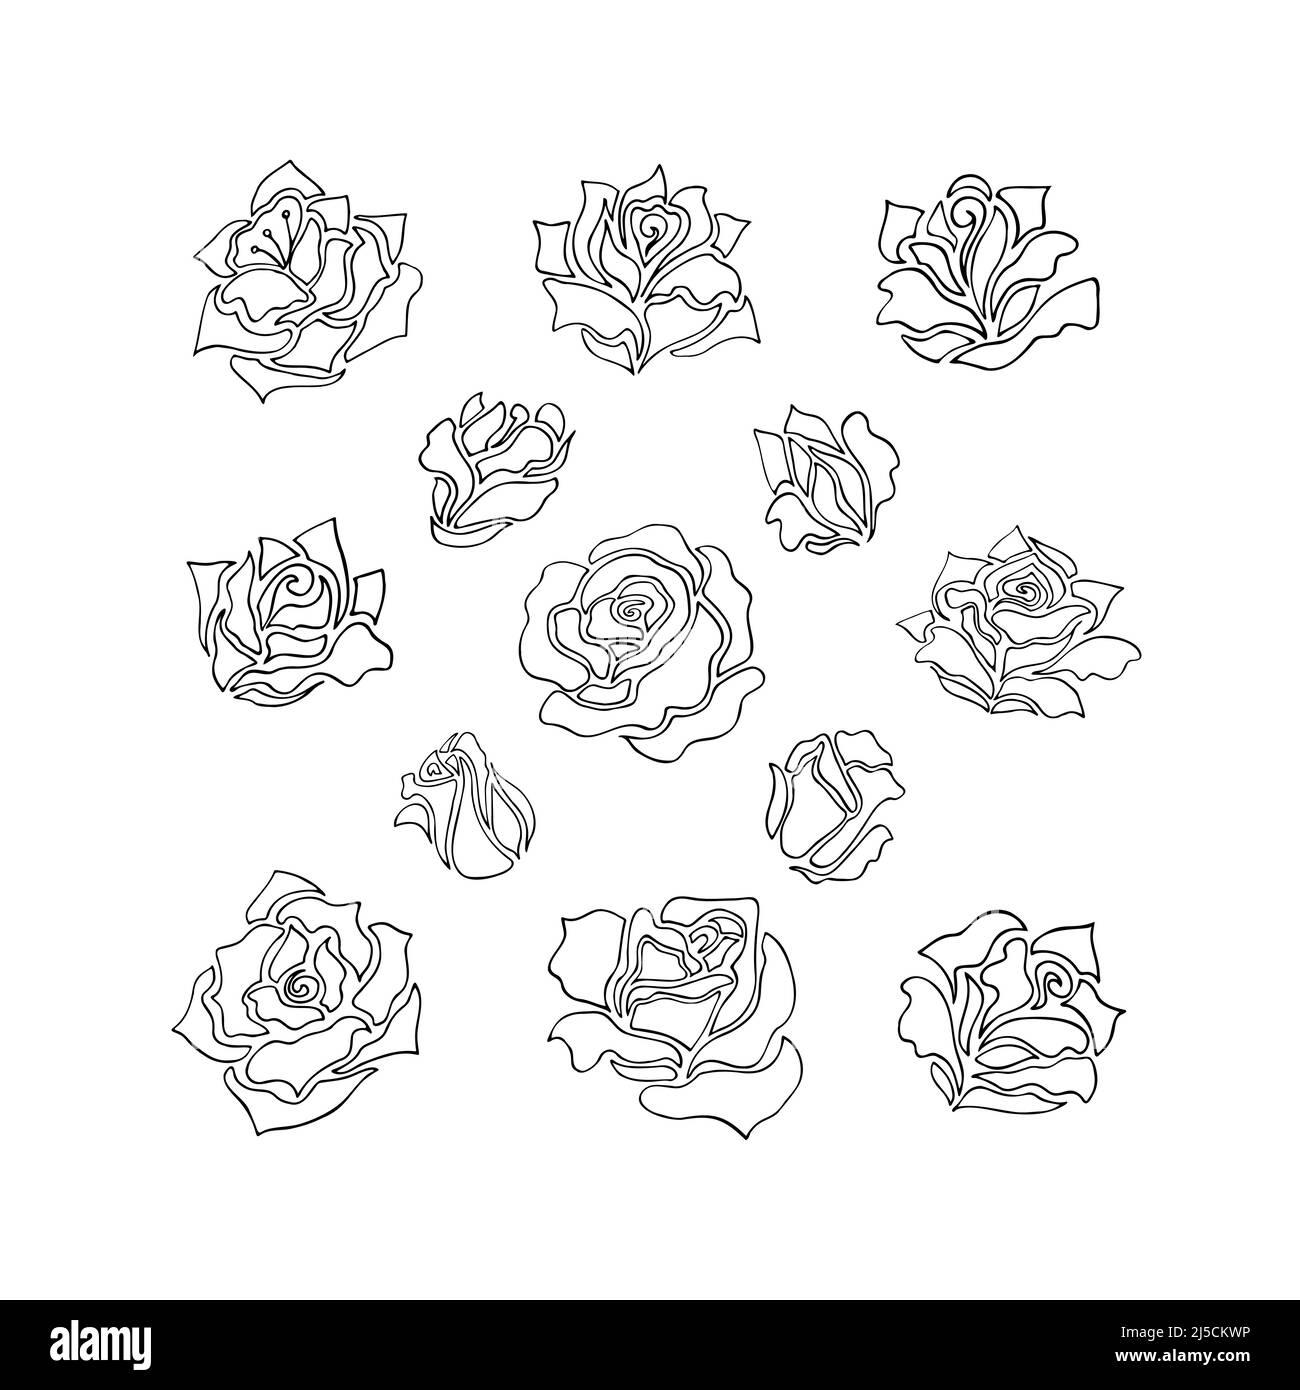 Illustrazioni di fiori di rosa e boccioli. Collezione di elementi floreali in originale stile artistico di linea Illustrazione Vettoriale